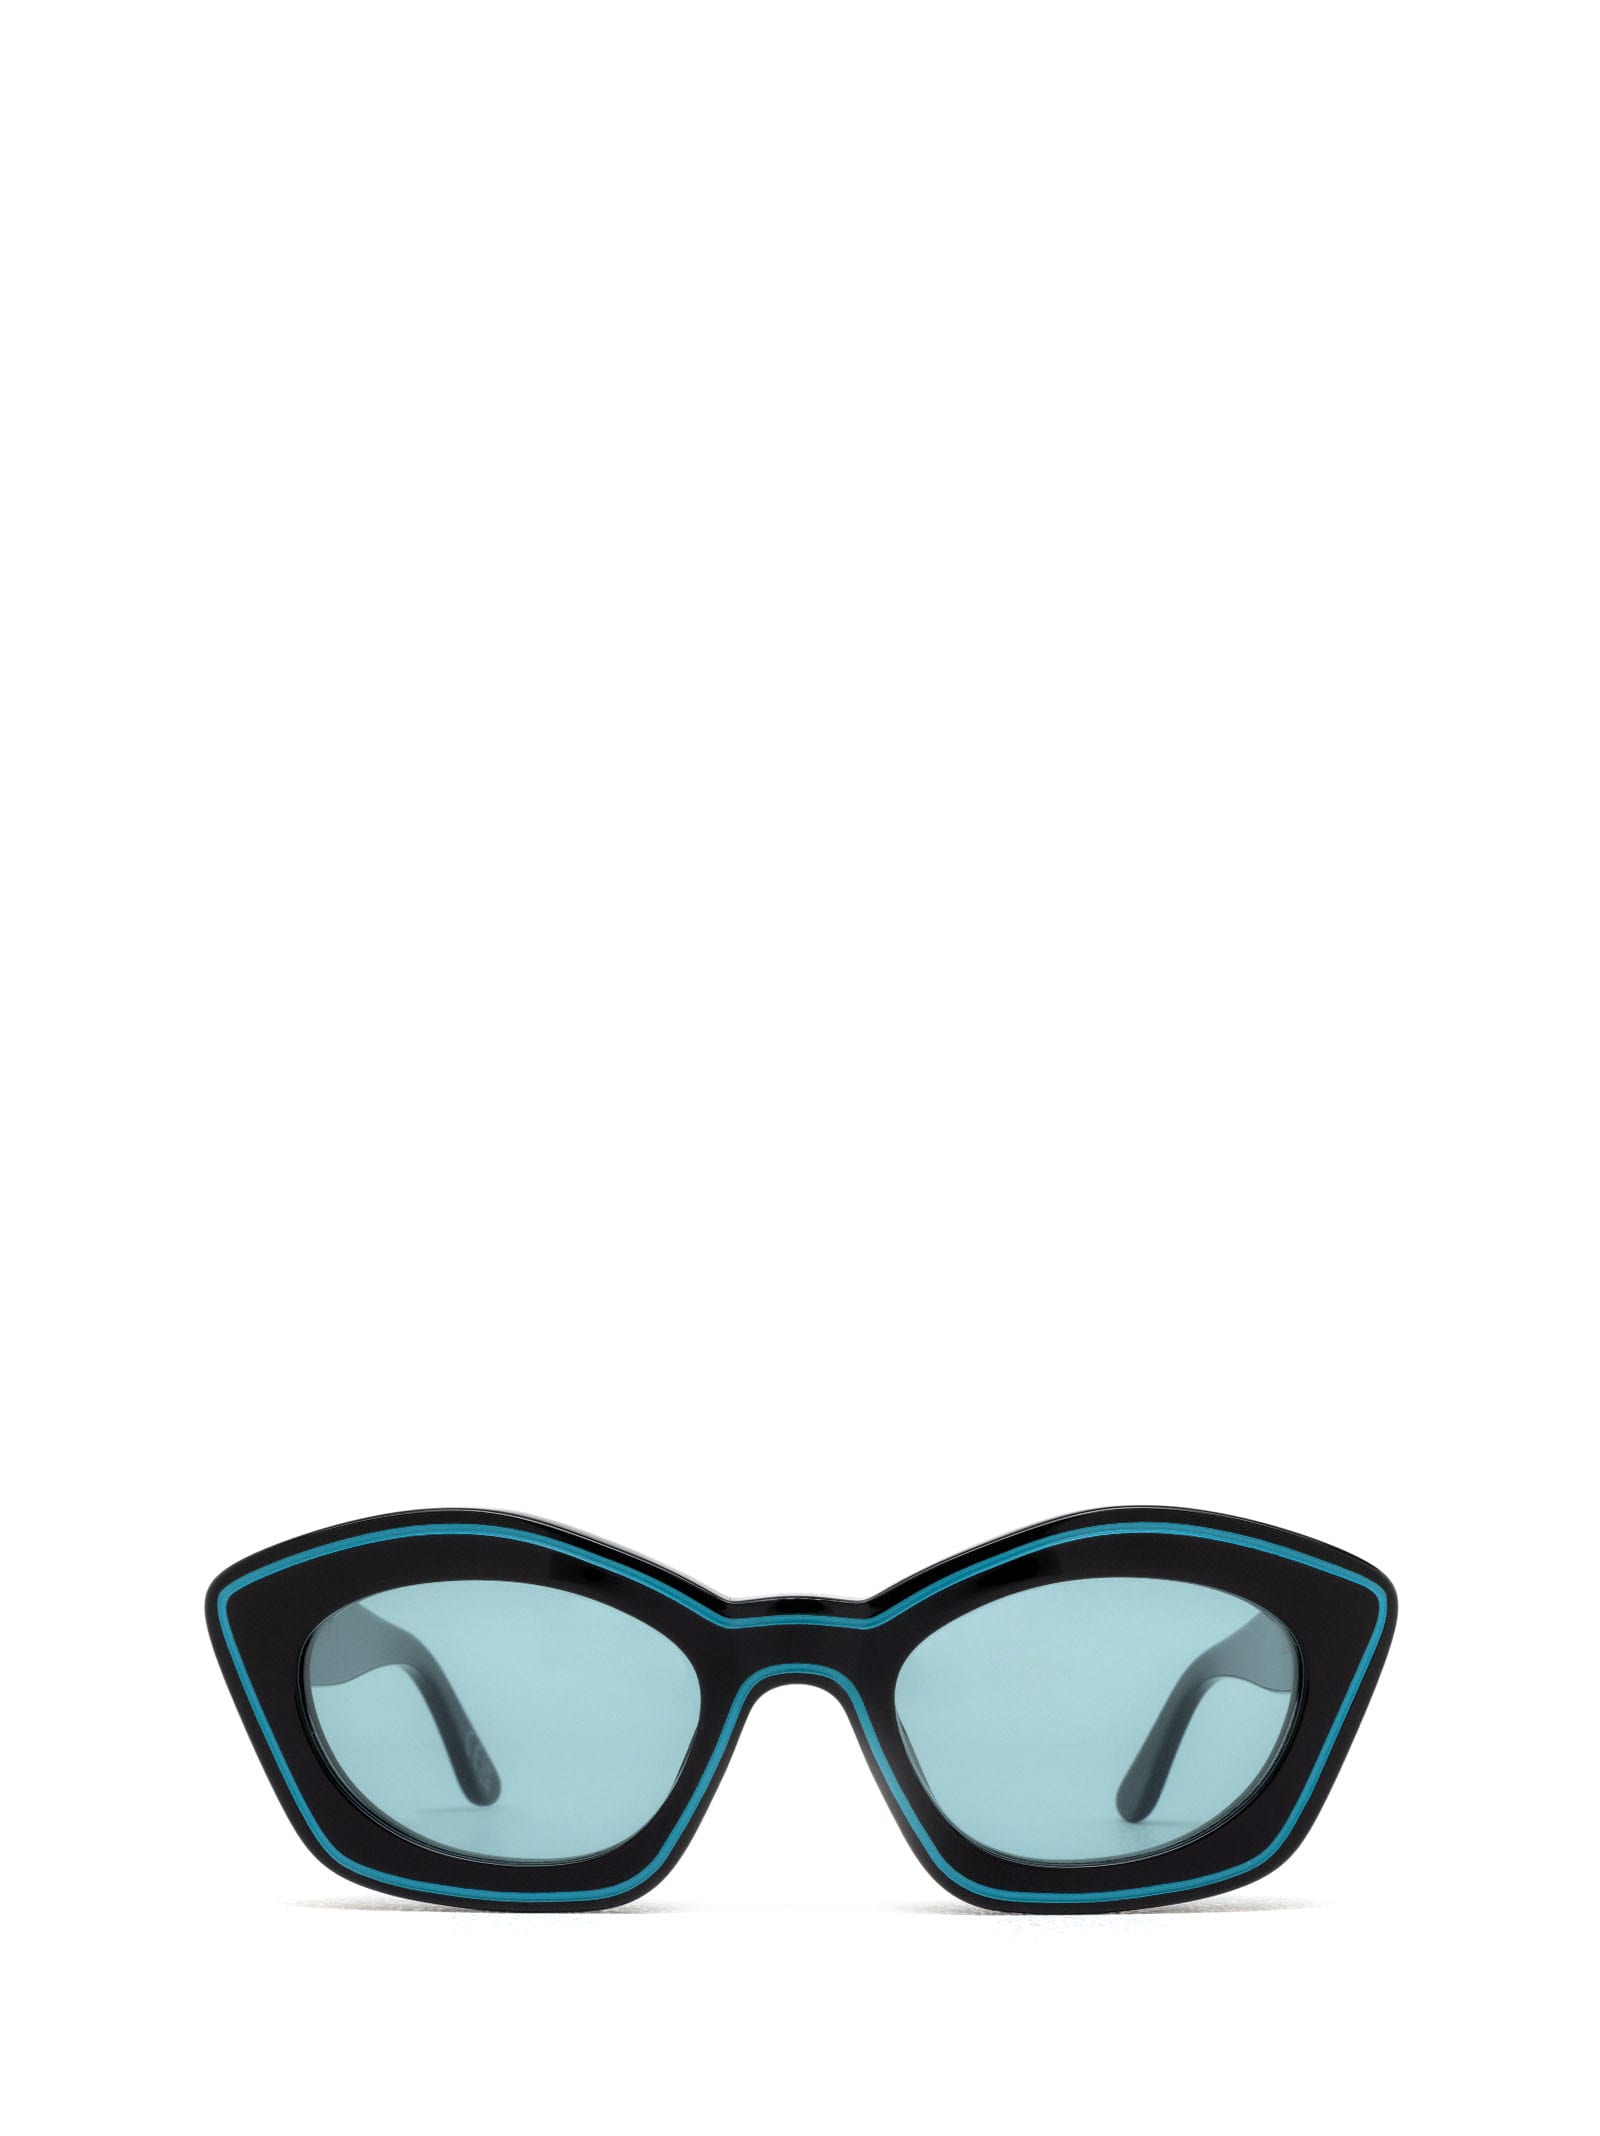 Marni Eyewear Kea Island Teal Teal Sunglasses